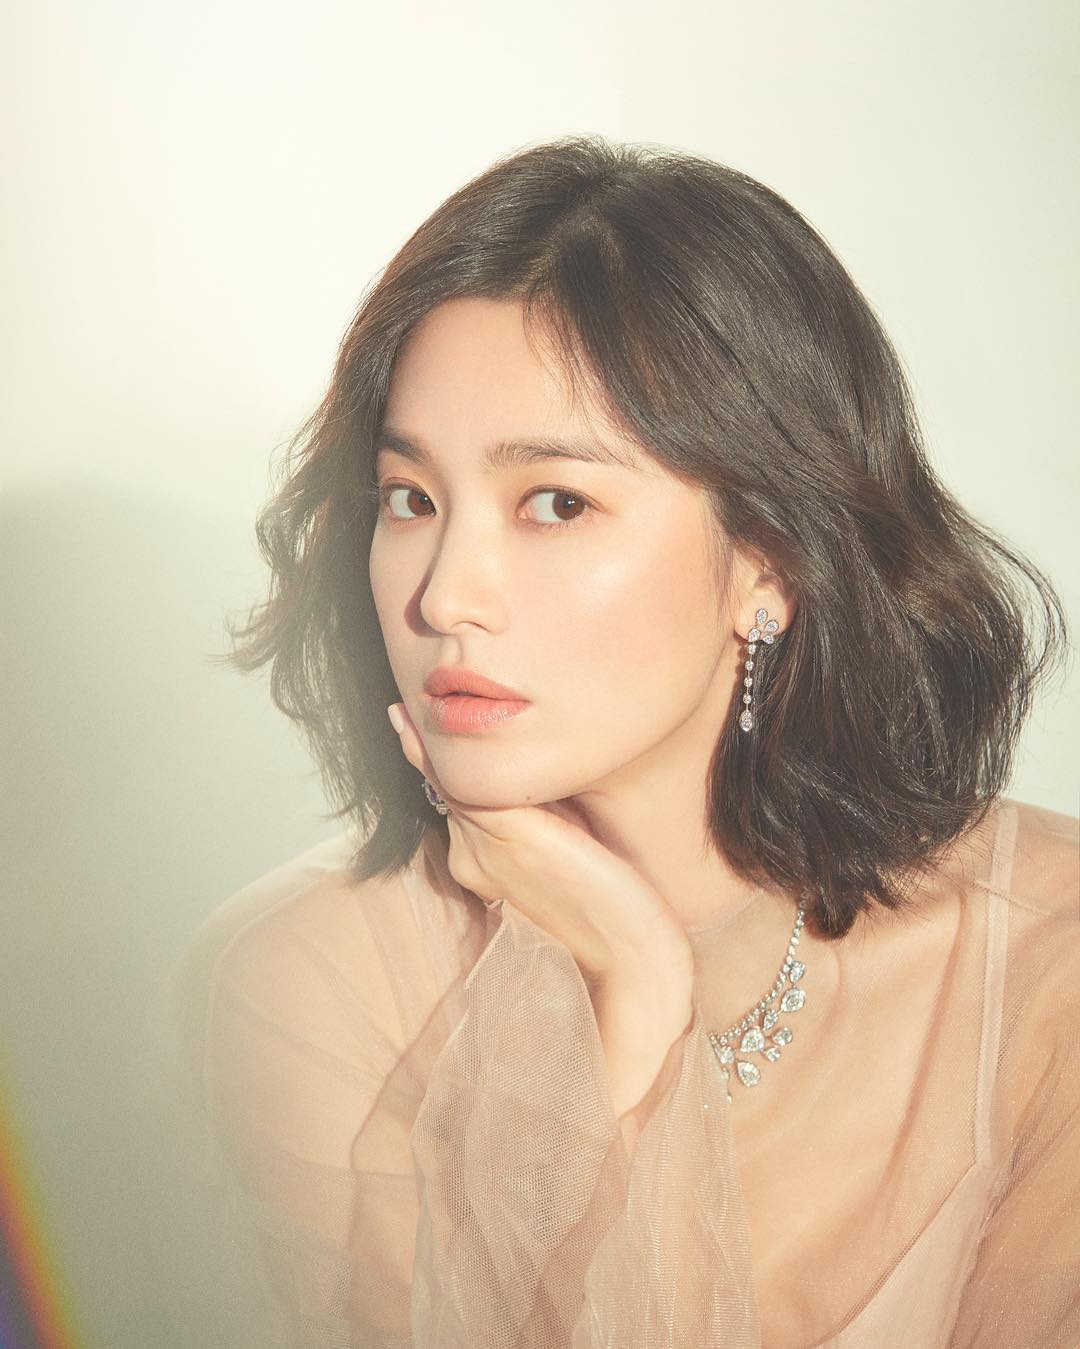 Nhìn tuyển tập ảnh mặt mộc ít son phấn của Song Hye Kyo, người ta sẽ biết nhan sắc của cô &quot;thần thánh&quot; đến độ nào - Ảnh 2.